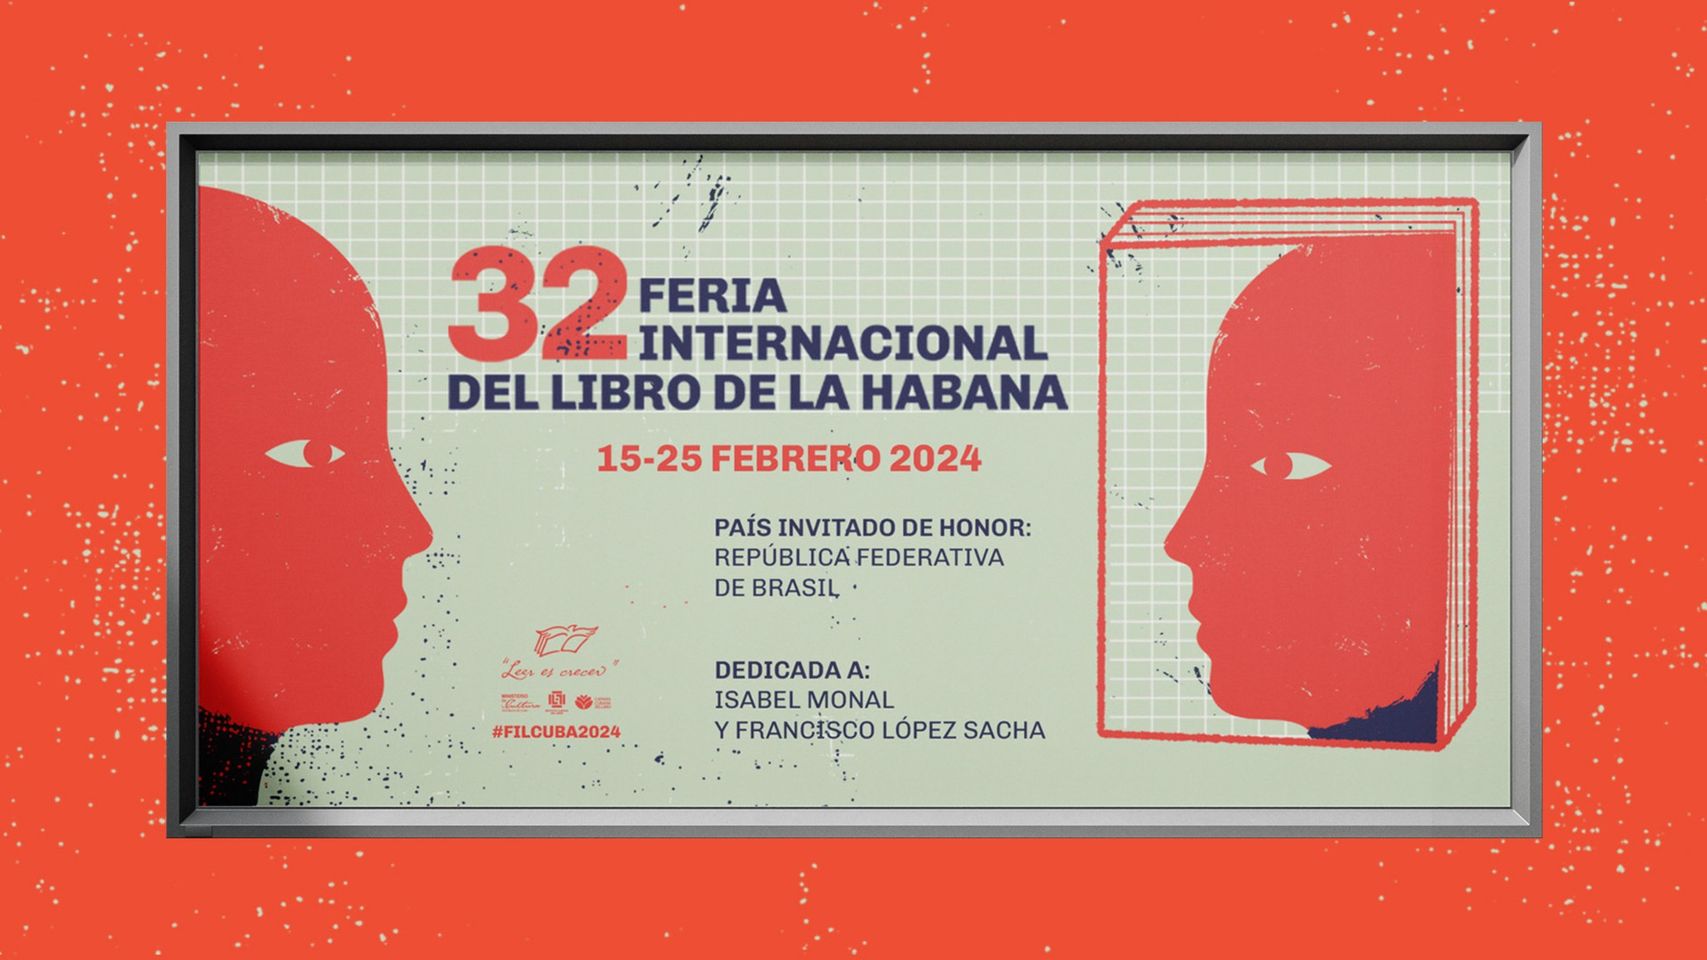 Brasil, país invitado de honor en la 32ª Feria Internacional del Libro de La Habana